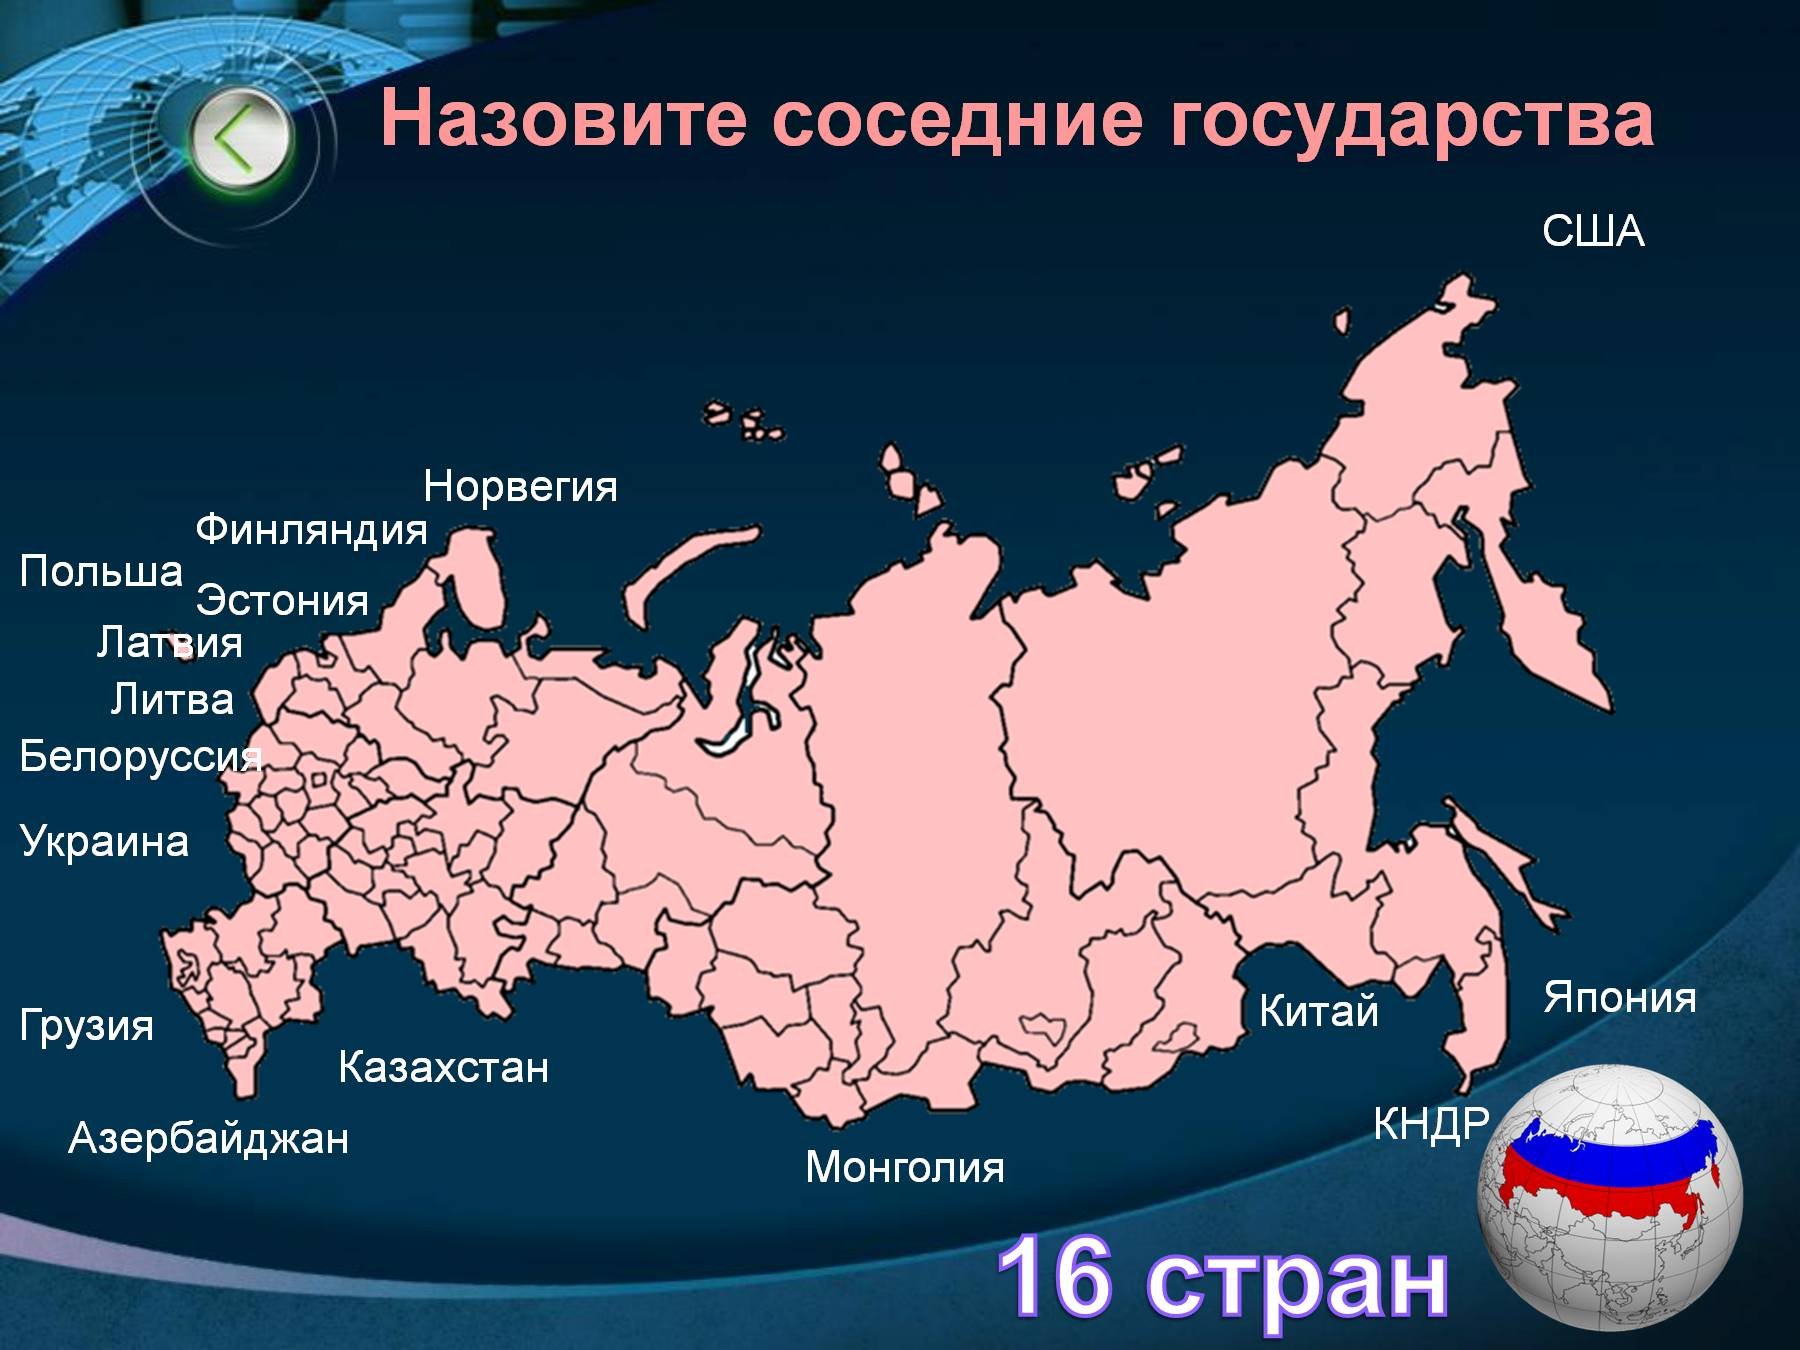 Страны соседи россии финляндия польша азербайджан